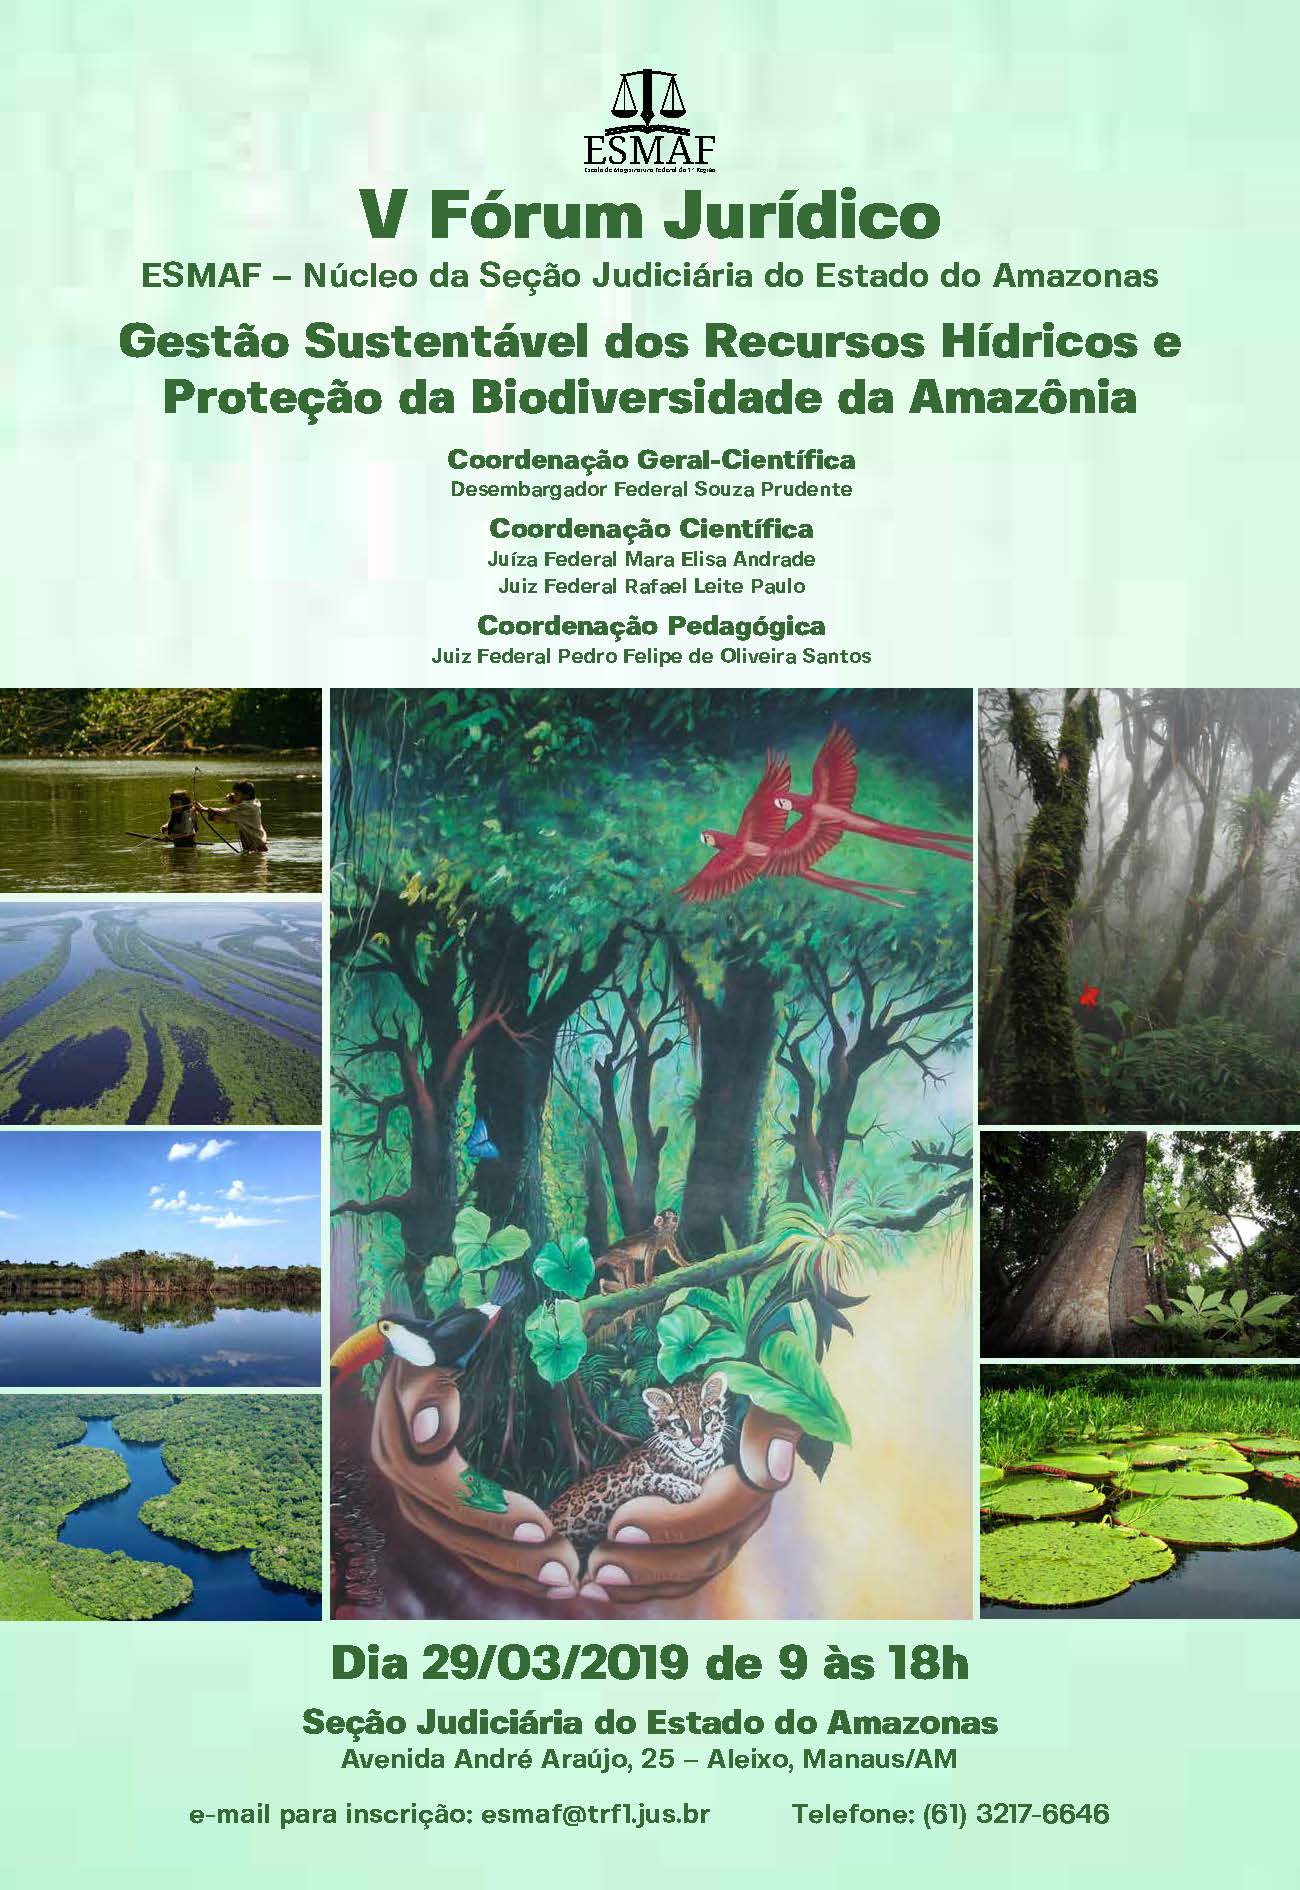 INSTITUCIONAL: Gestão de recursos hídricos e proteção da biodiversidade da Amazônia é tema do V Fórum Jurídico da Esmaf em Manaus